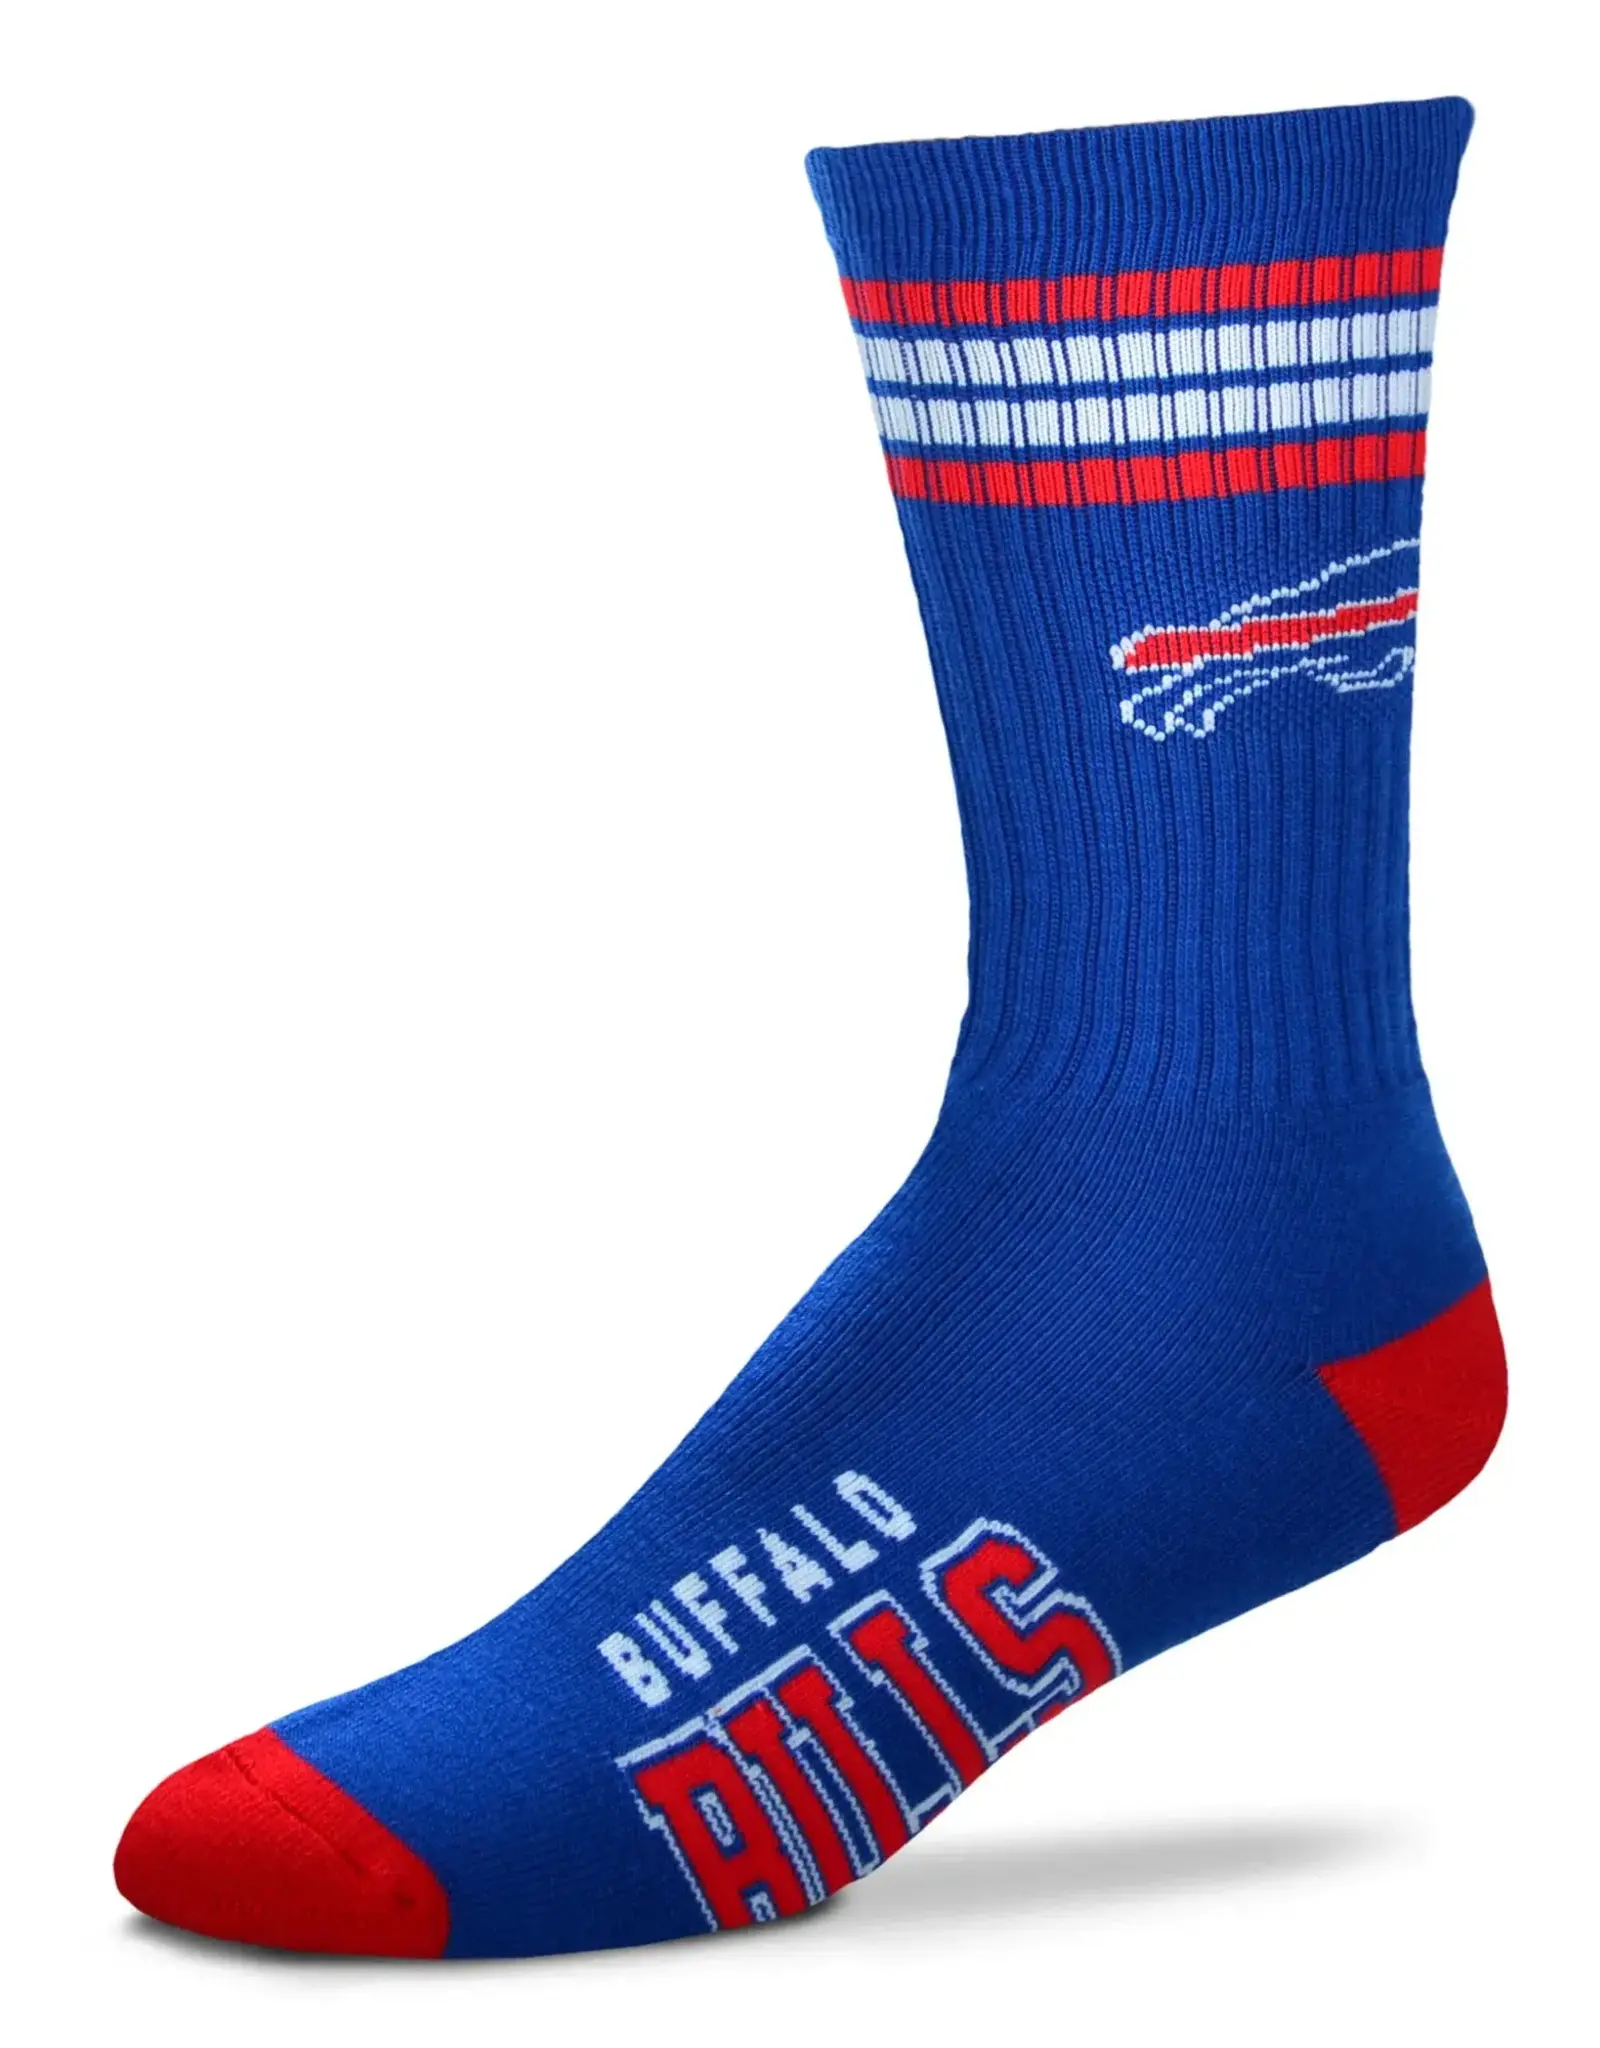 For Bare Feet Buffalo Bills Men's Deuce Crew Socks